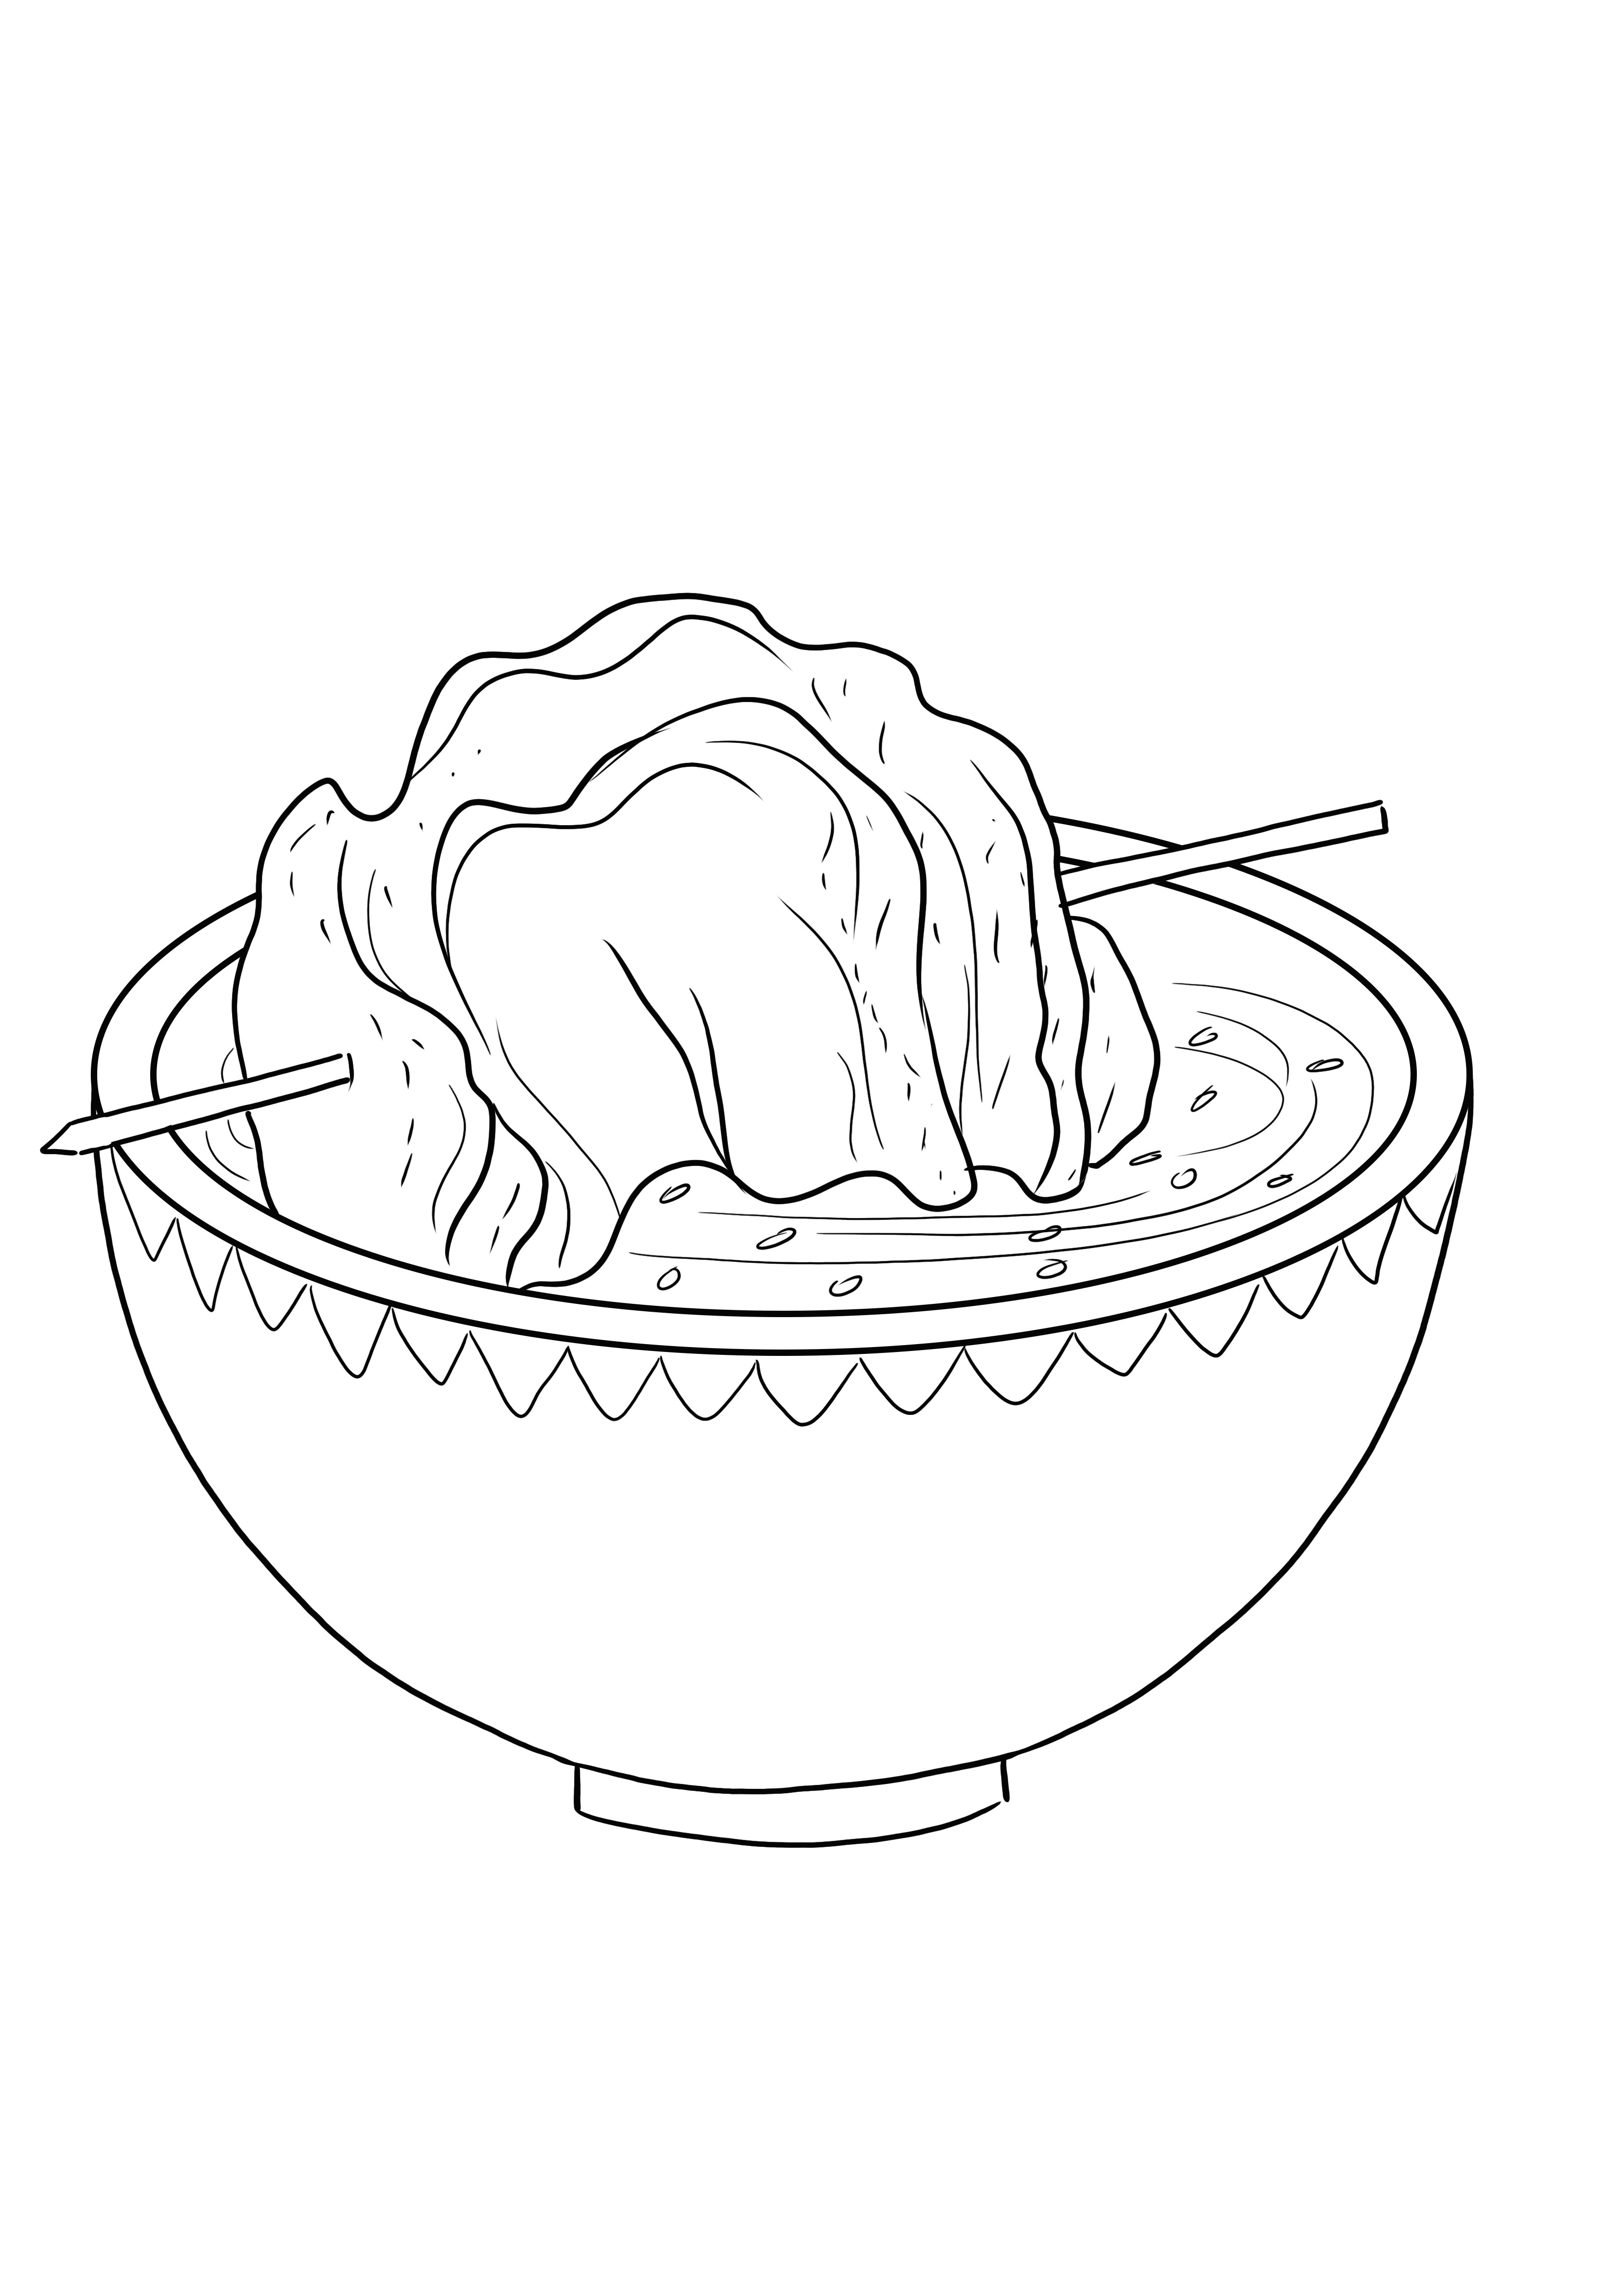 Immagine da colorare creativa di una ciotola di cibo asiatico da scaricare o stampare gratuitamente